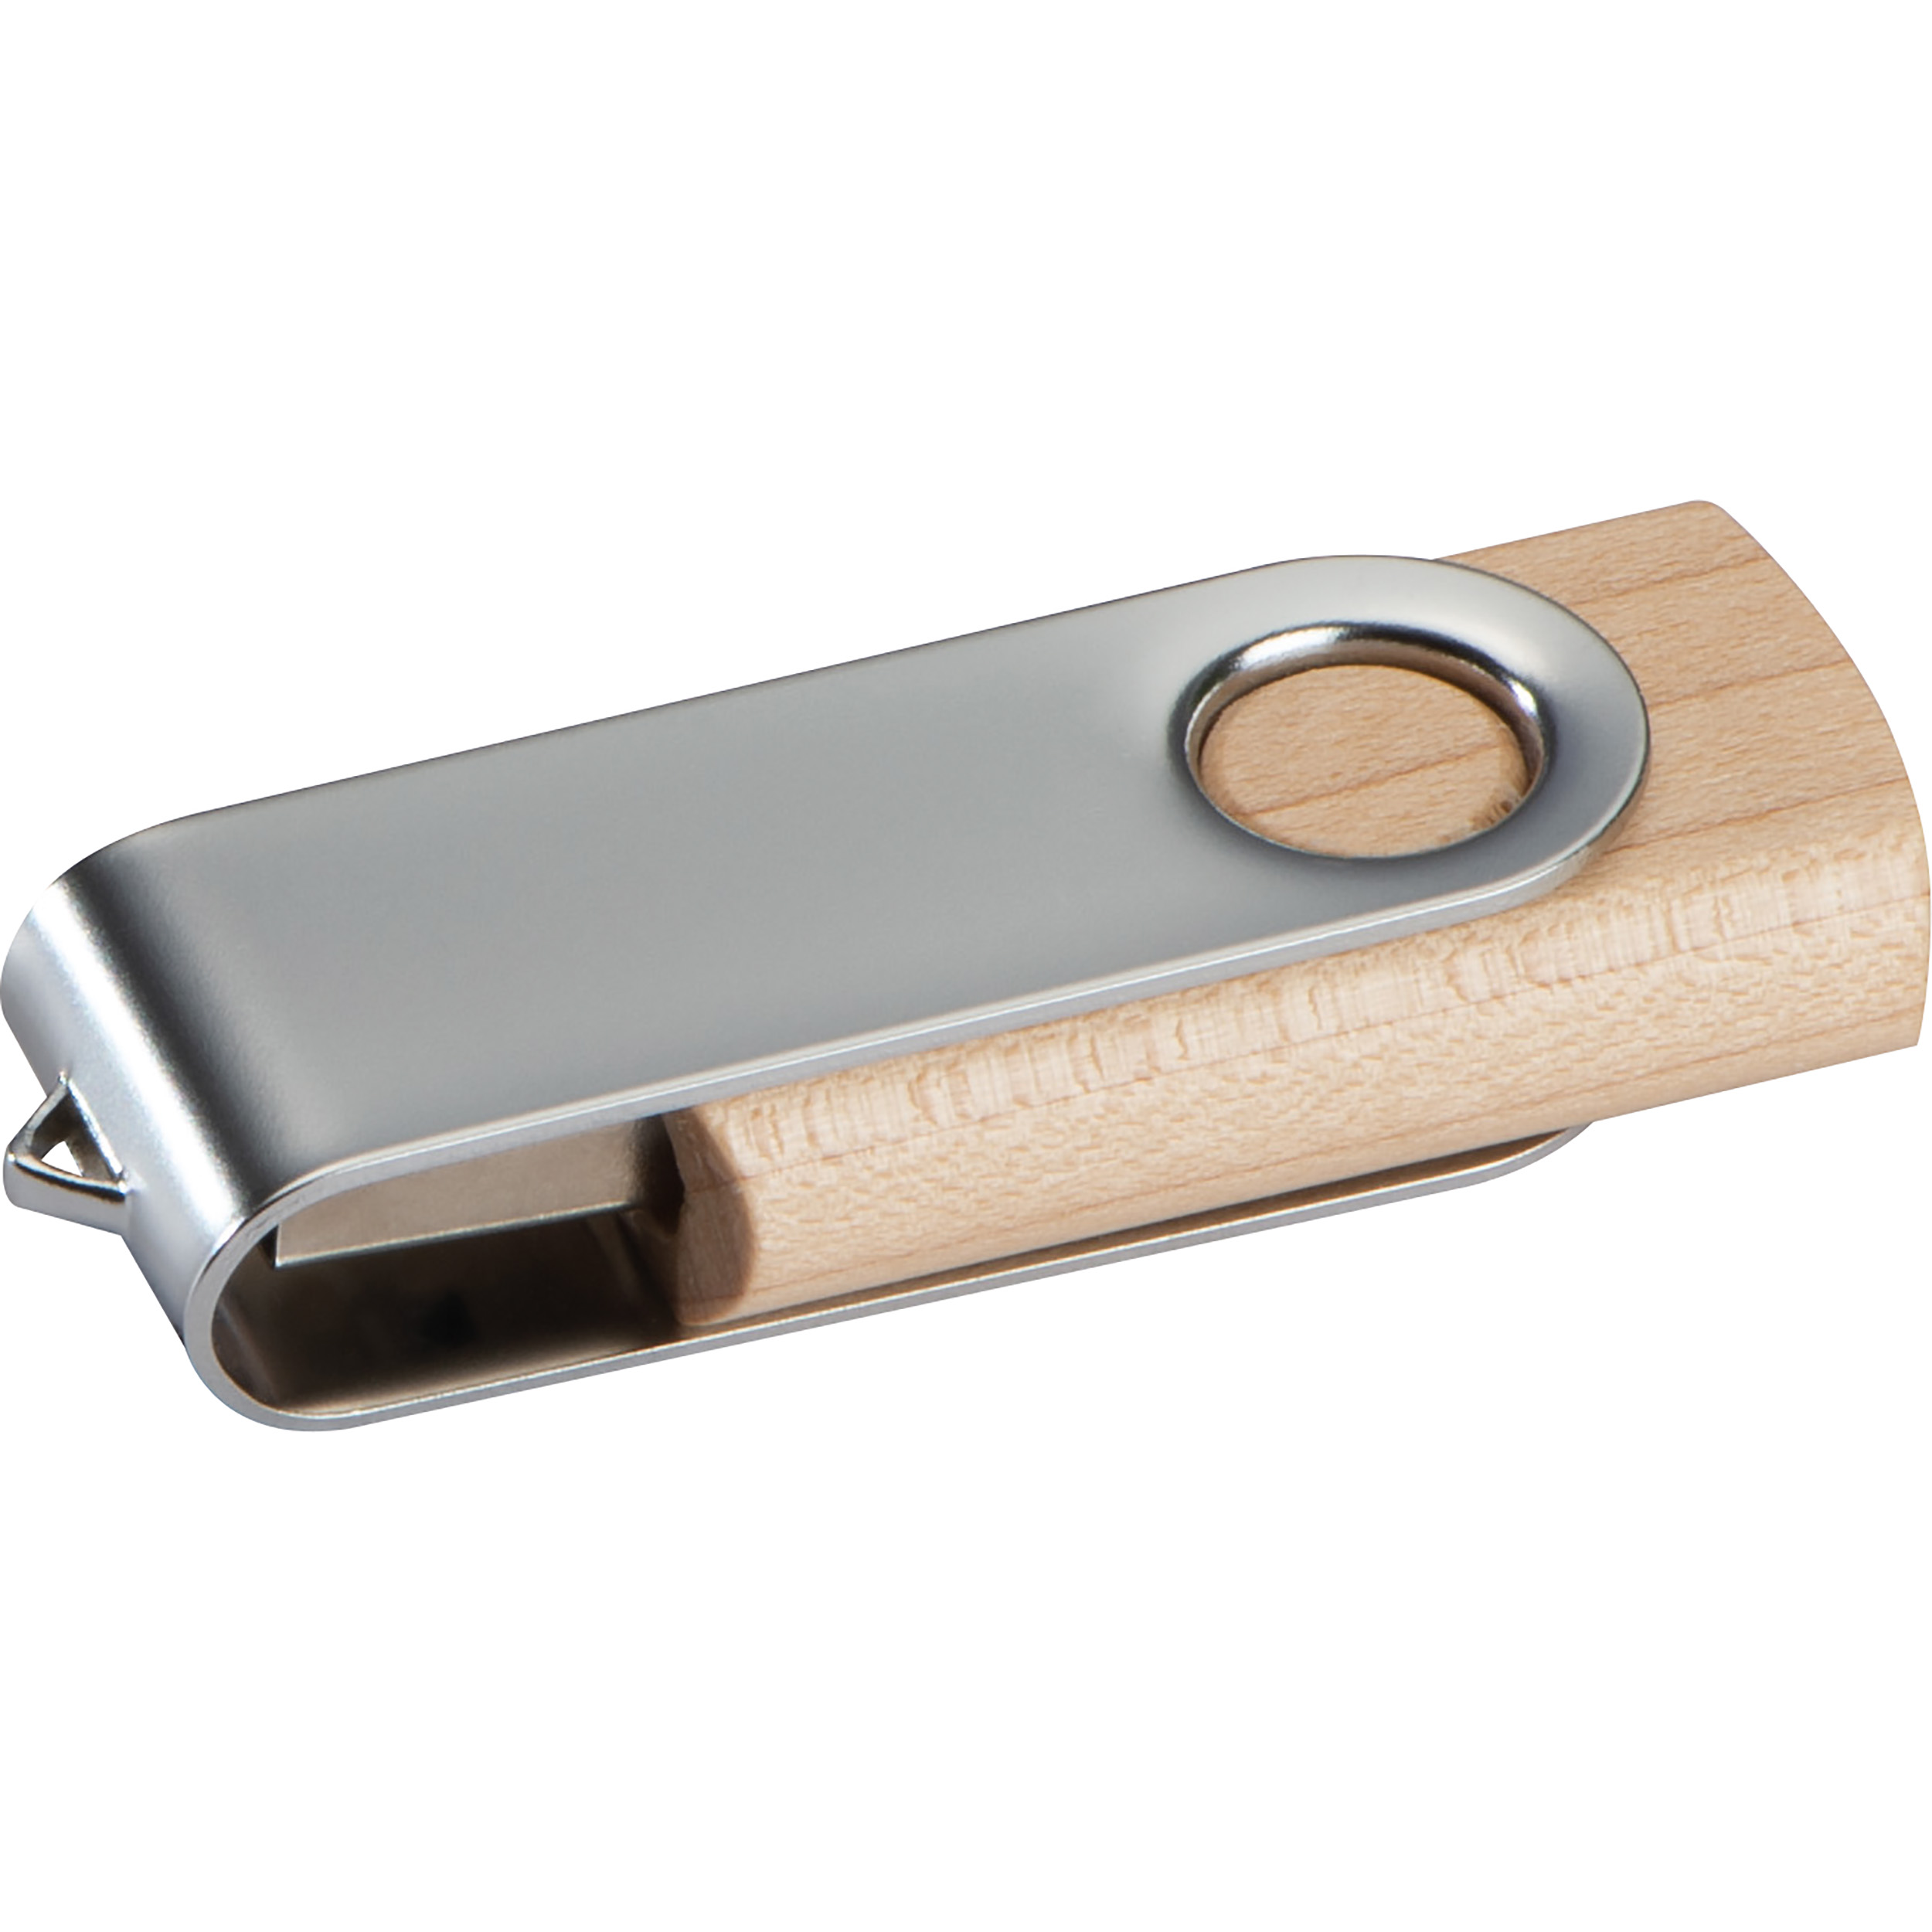 Chiavetta doppia USB con coperchio in legno chiaro